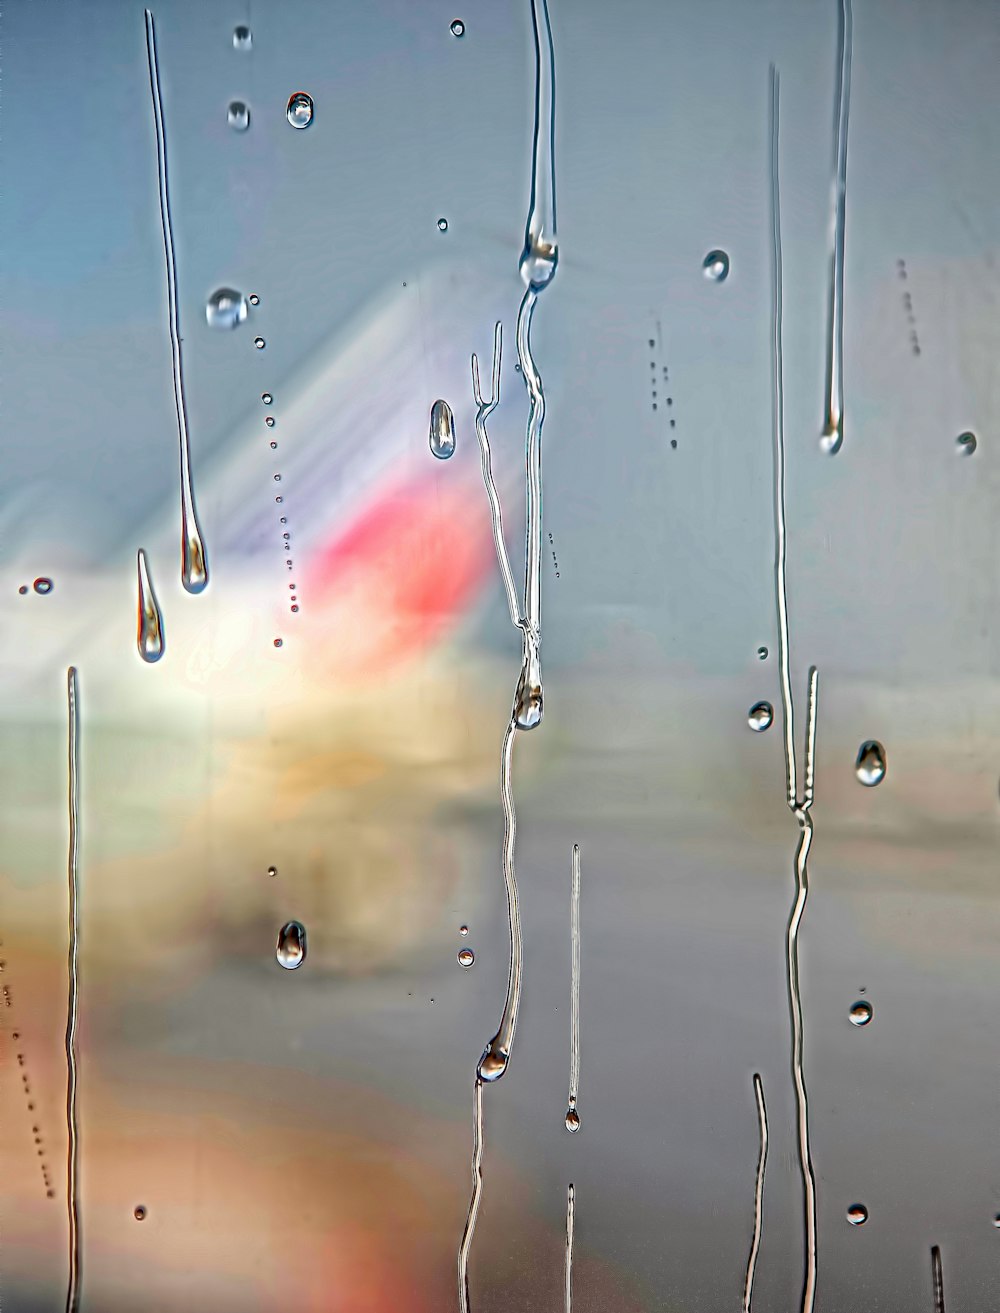 fotografia de foco de gotículas de água na superfície de vidro